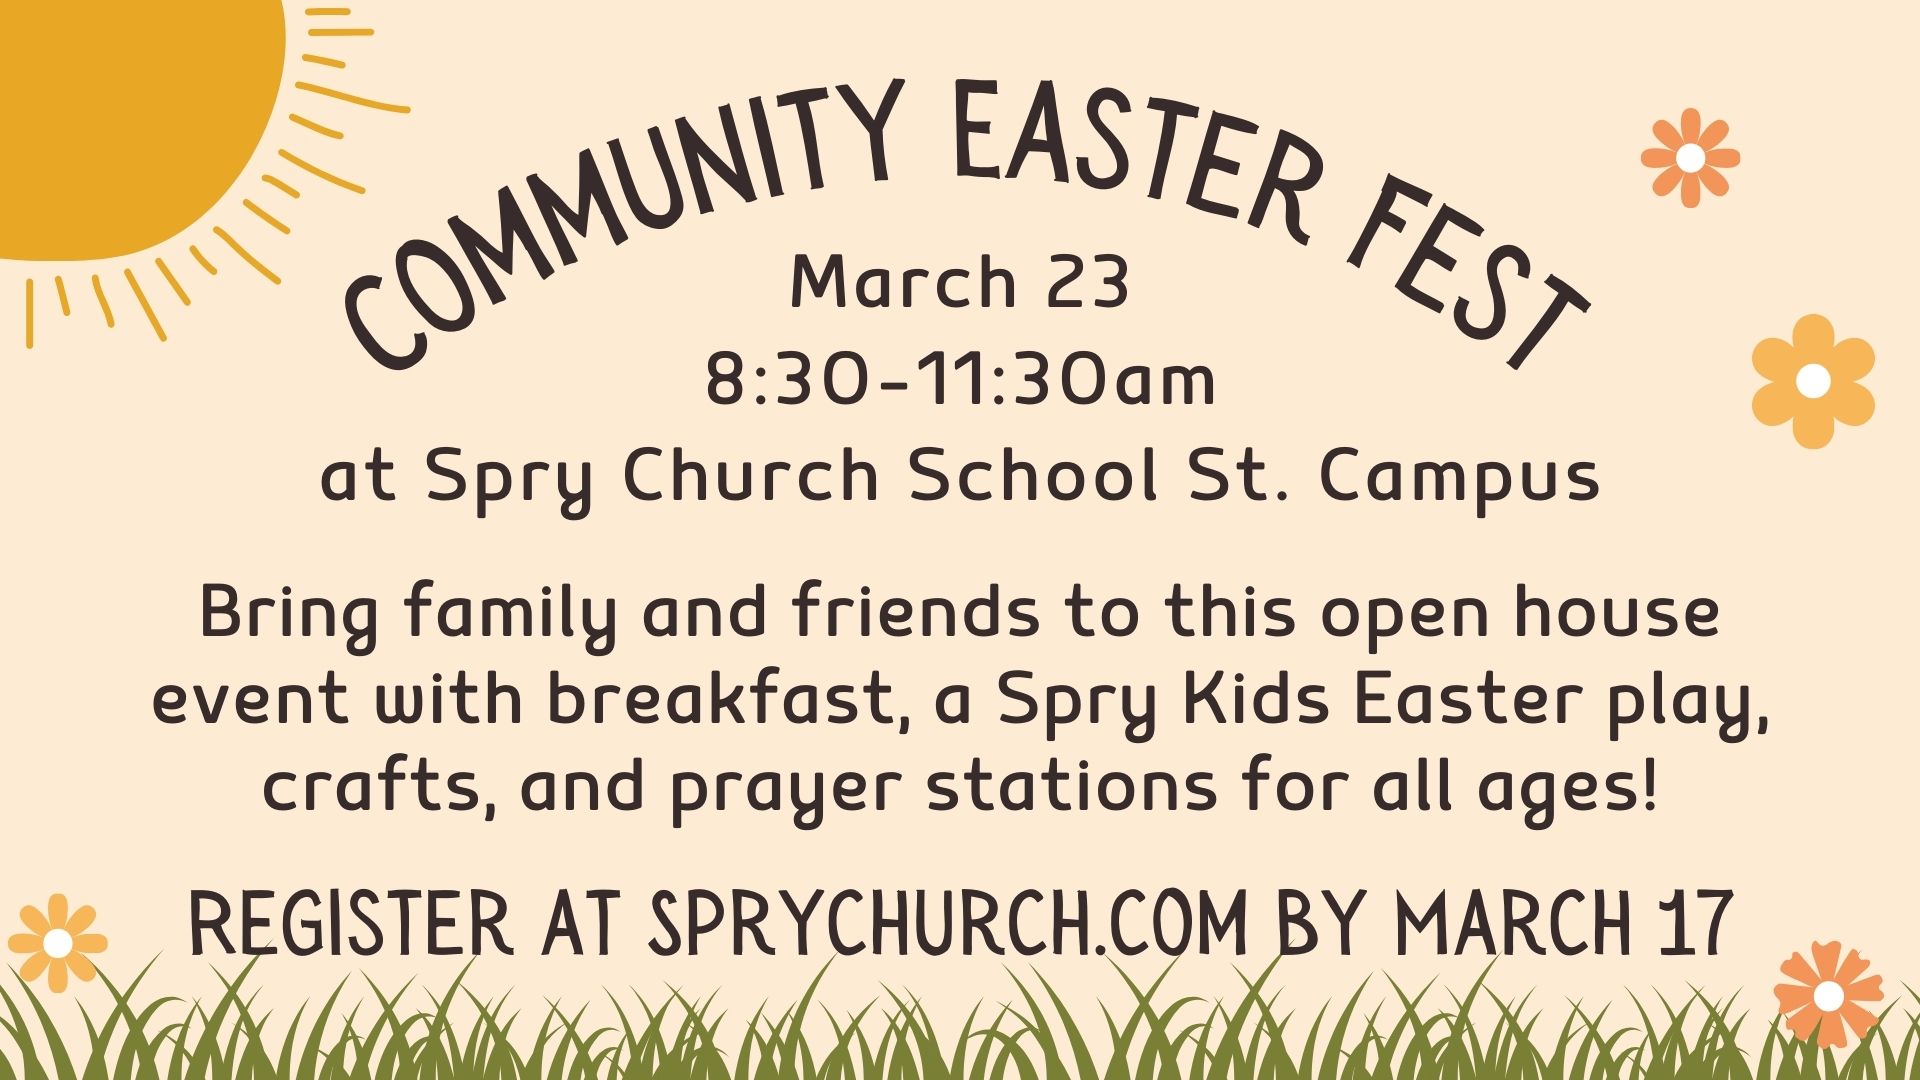 Community Easter Fest